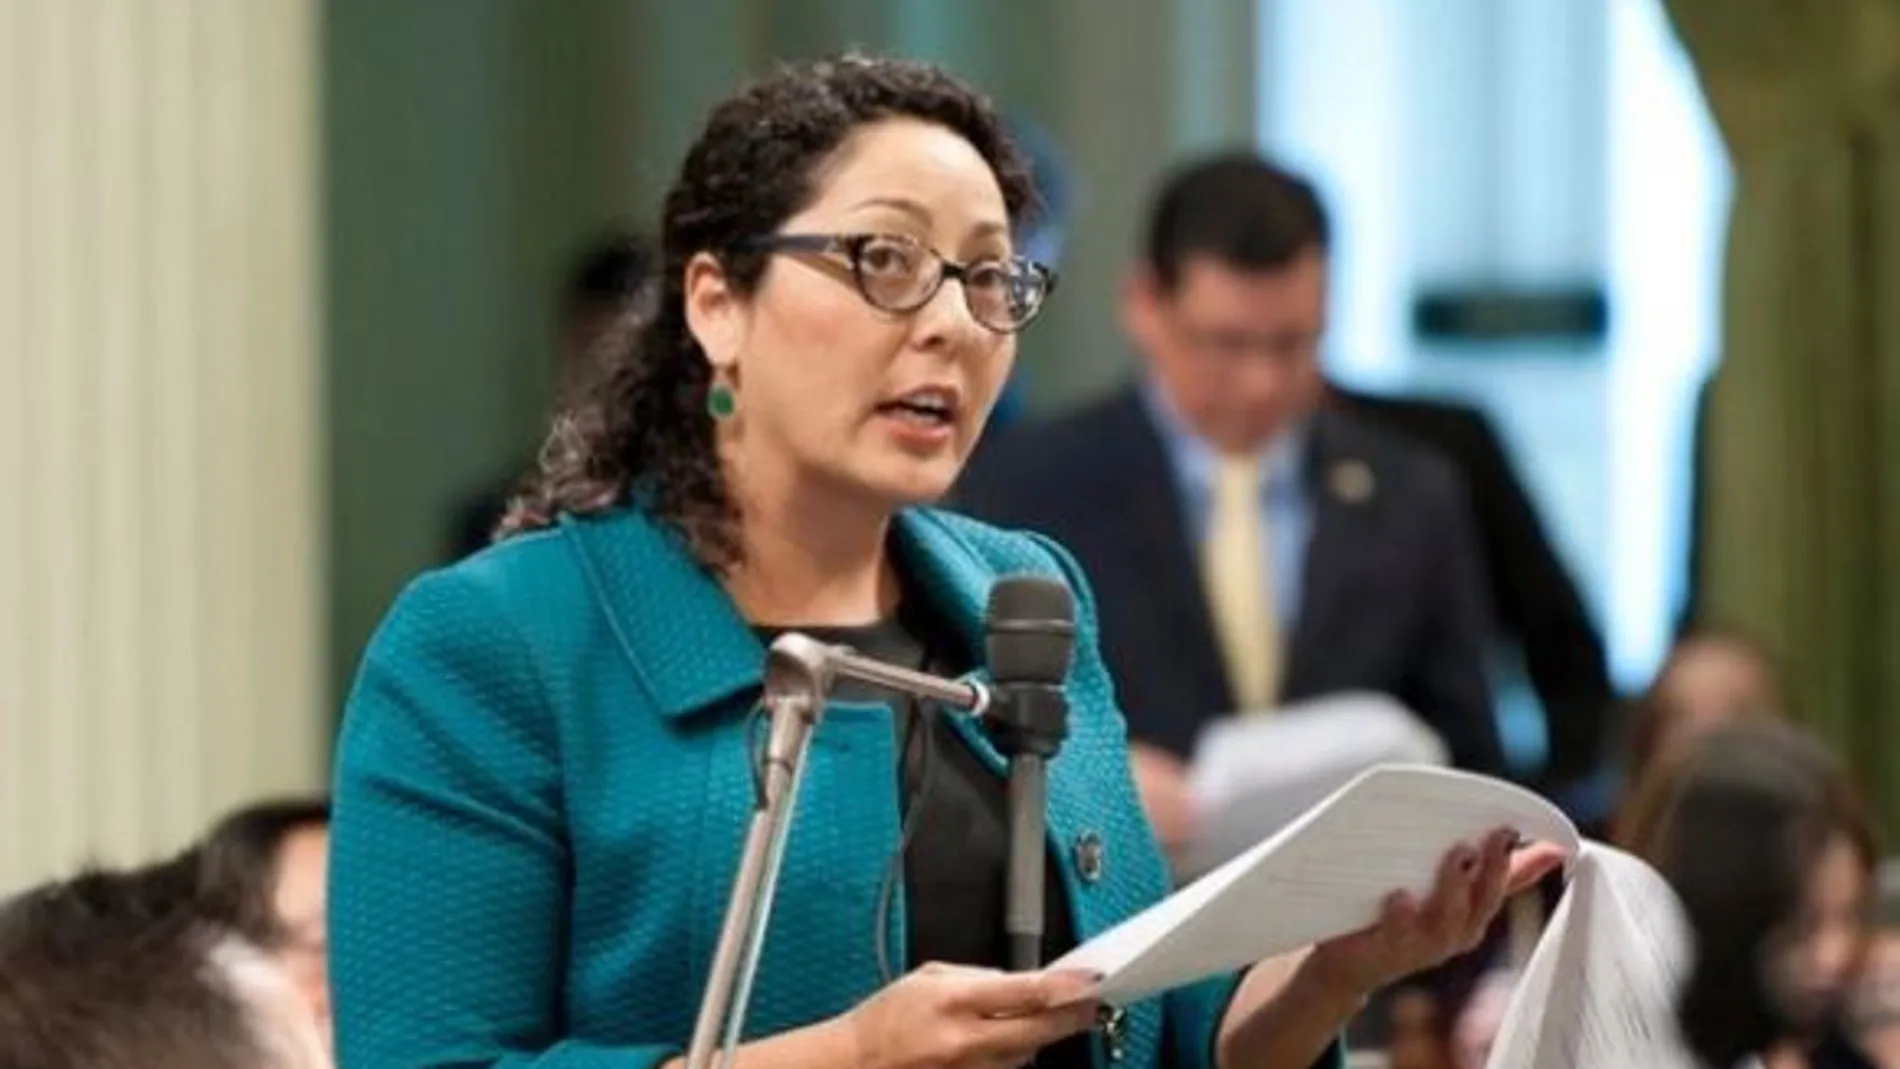 Cristina García, legisladora demócrata de la Asamblea de California